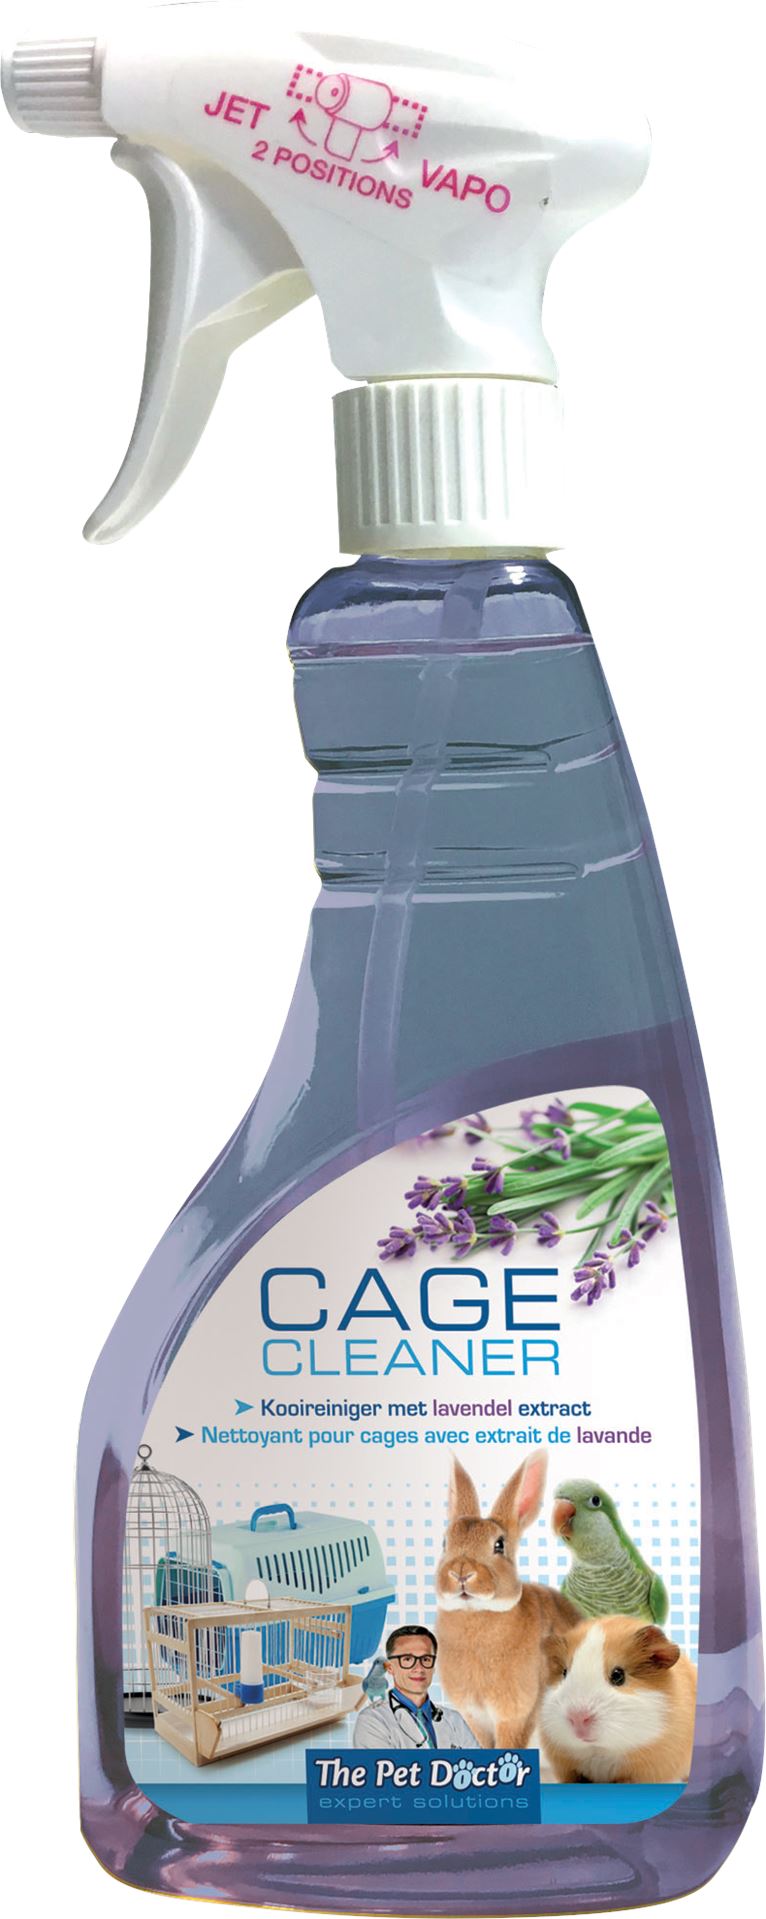 Cage-cleaner-lavendel-500ml-voor-het-reinigen-van-kooien-hokken-voederbakken-en-accessoires